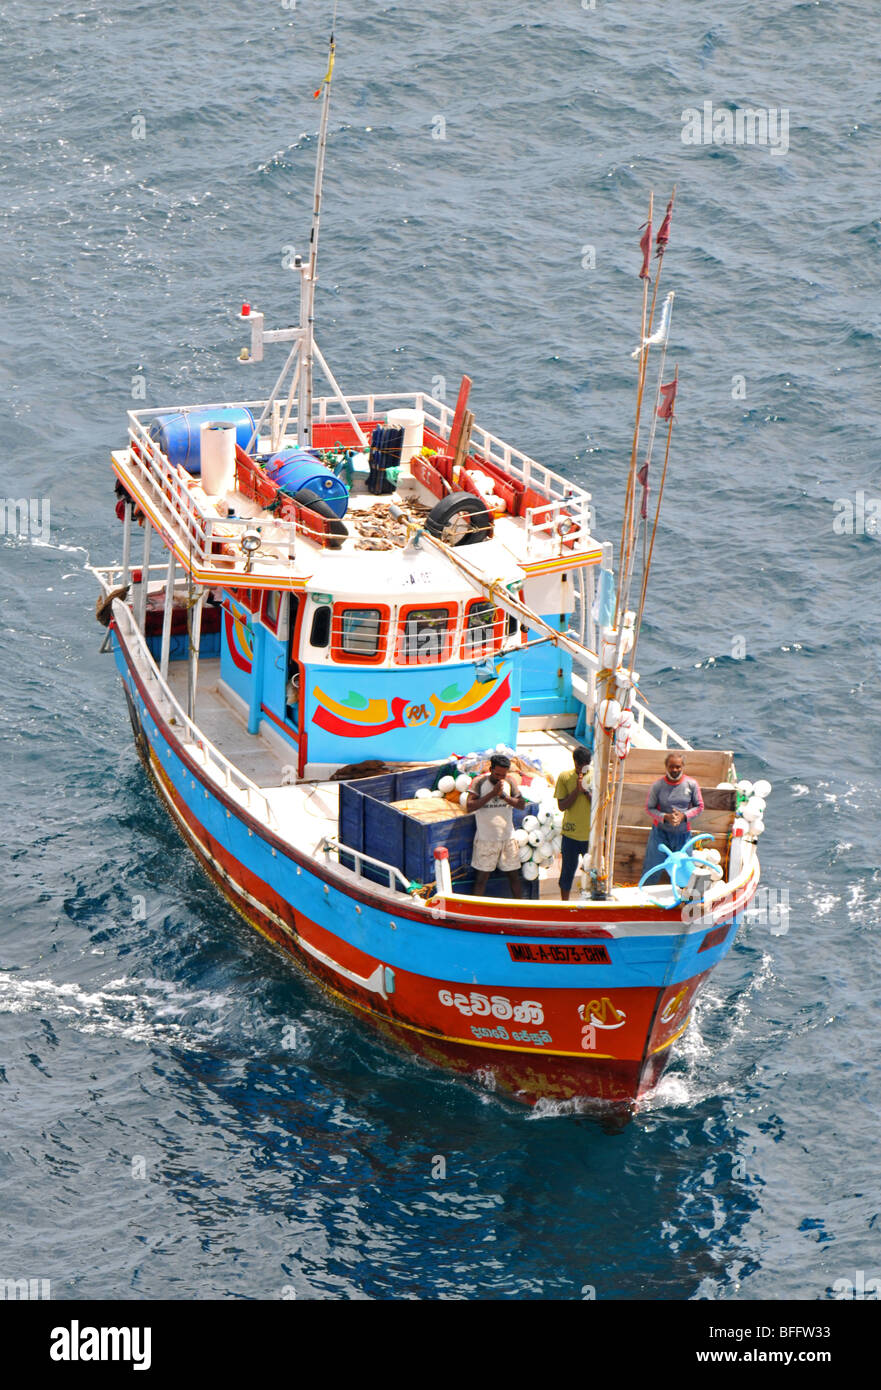 Sri Lankan fishing boat, Sri Lanka Stock Photo